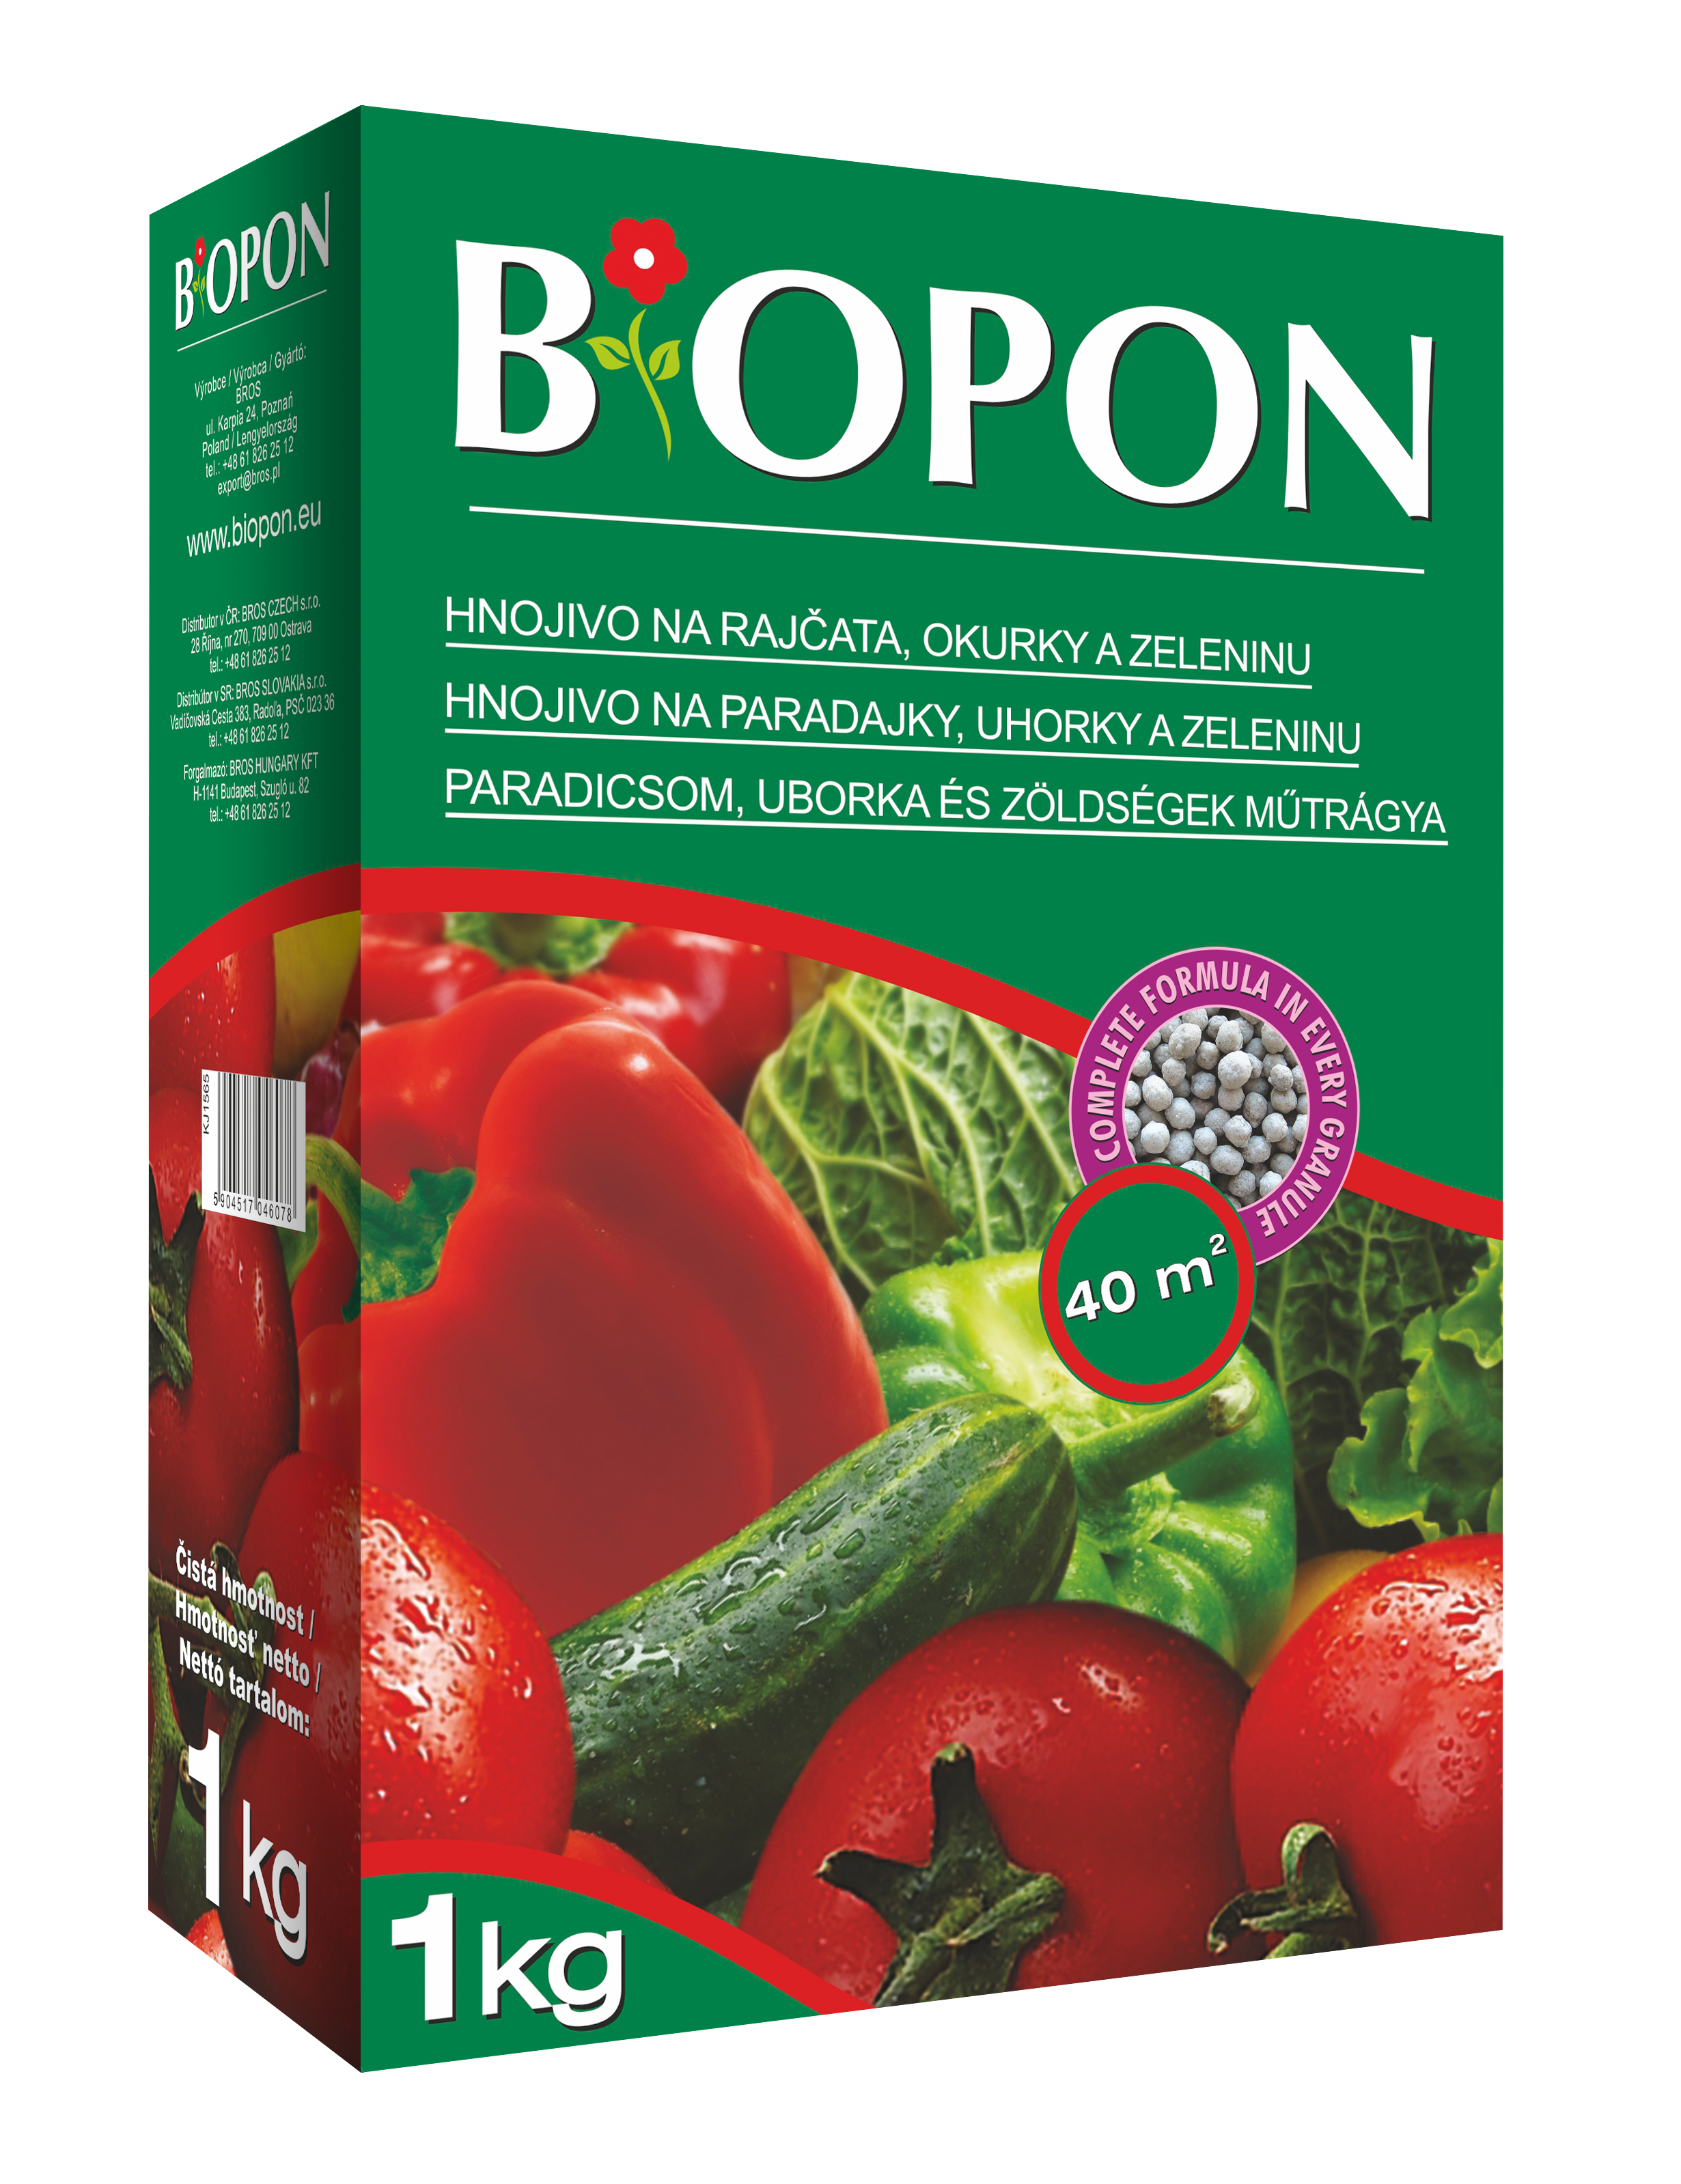 Biopon műtrágya paradicsomhoz, uborkához és zöldségekhez 1 kg